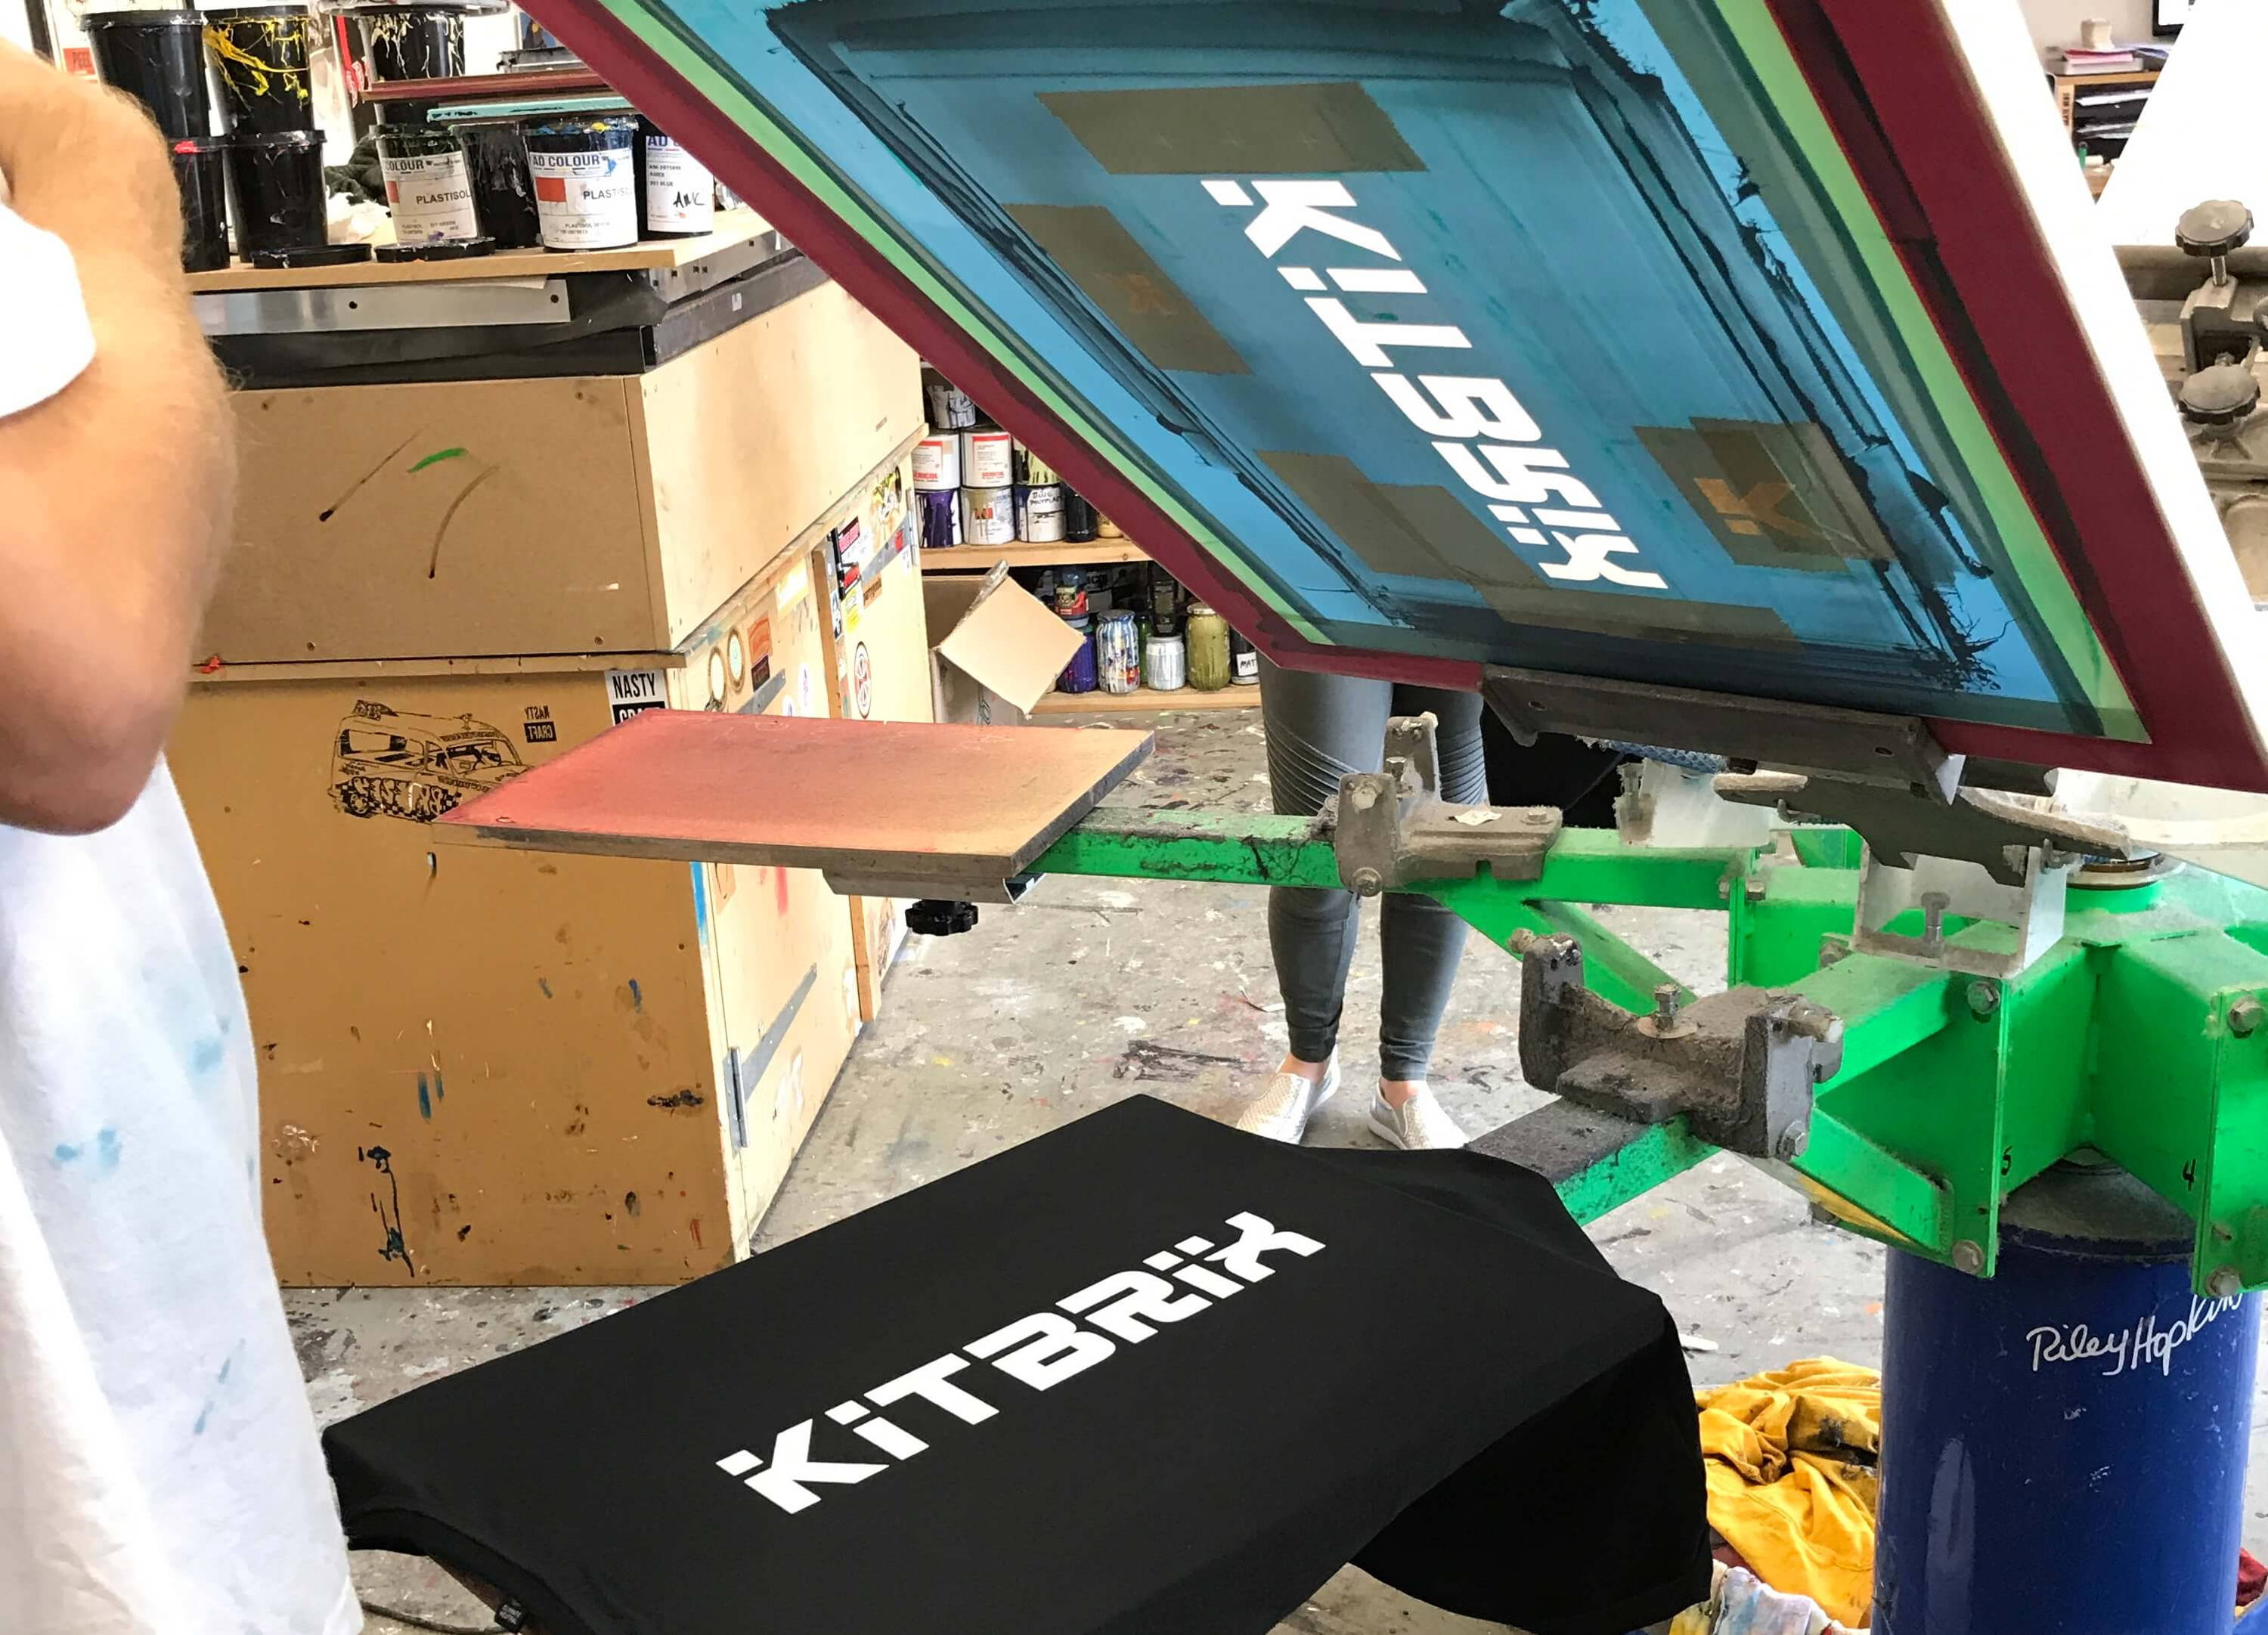 kitbrix apparel range